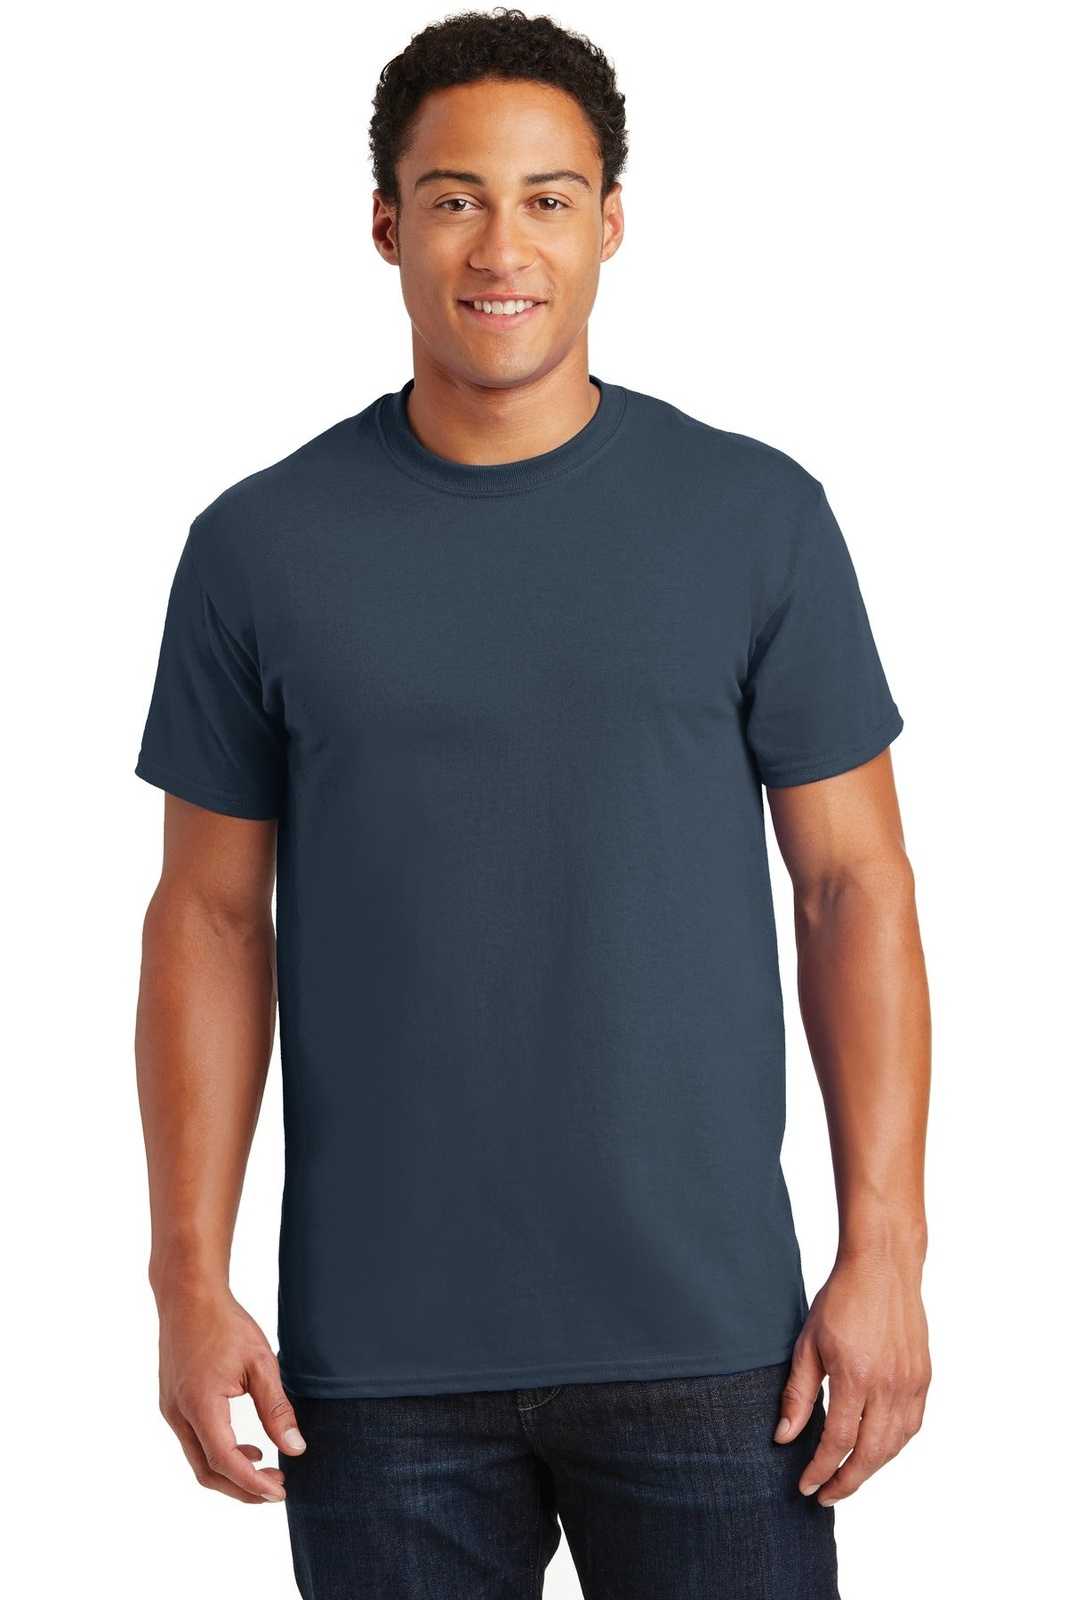 Gildan 2000 Ultra Cotton 100% Cotton T-Shirt - Blue Dusk - HIT a Double